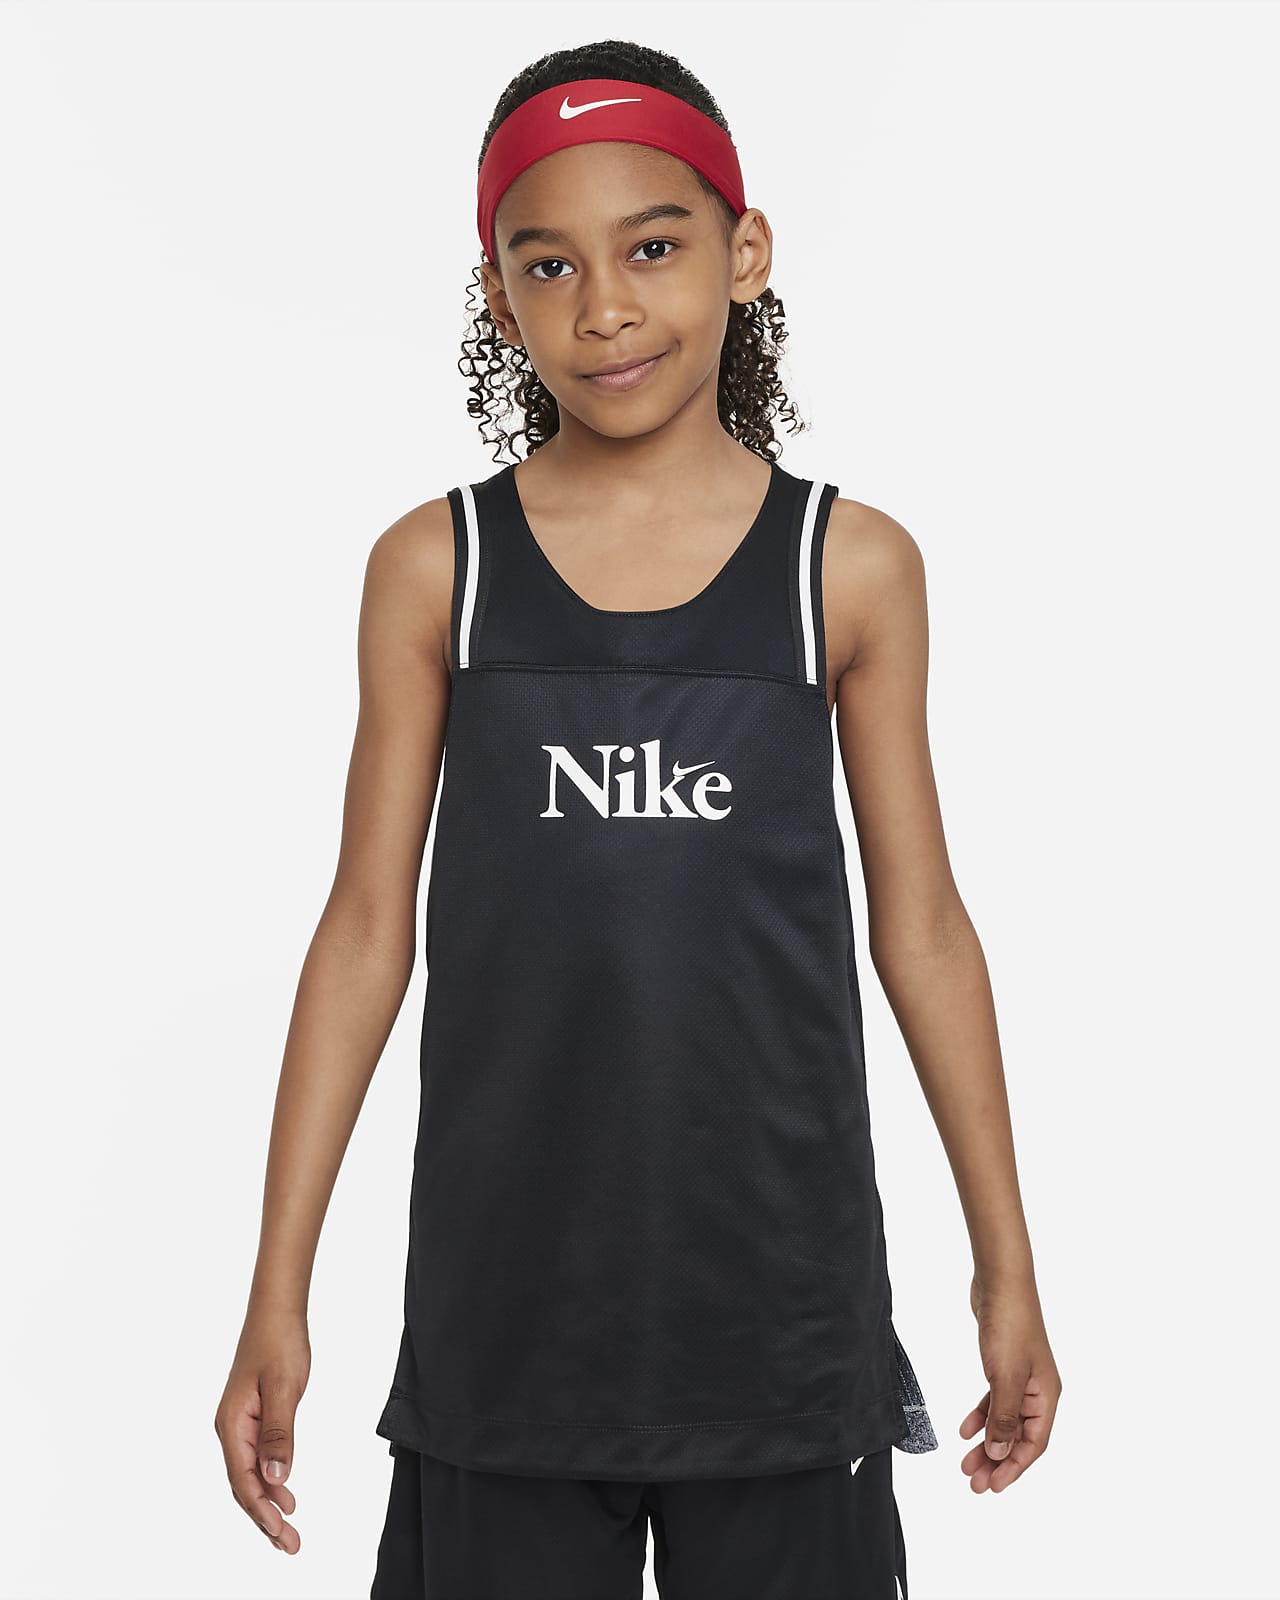 เสื้อแข่งบาสเก็ตบอลเด็กโตใส่ได้ 2 ด้าน Nike Culture of Basketball